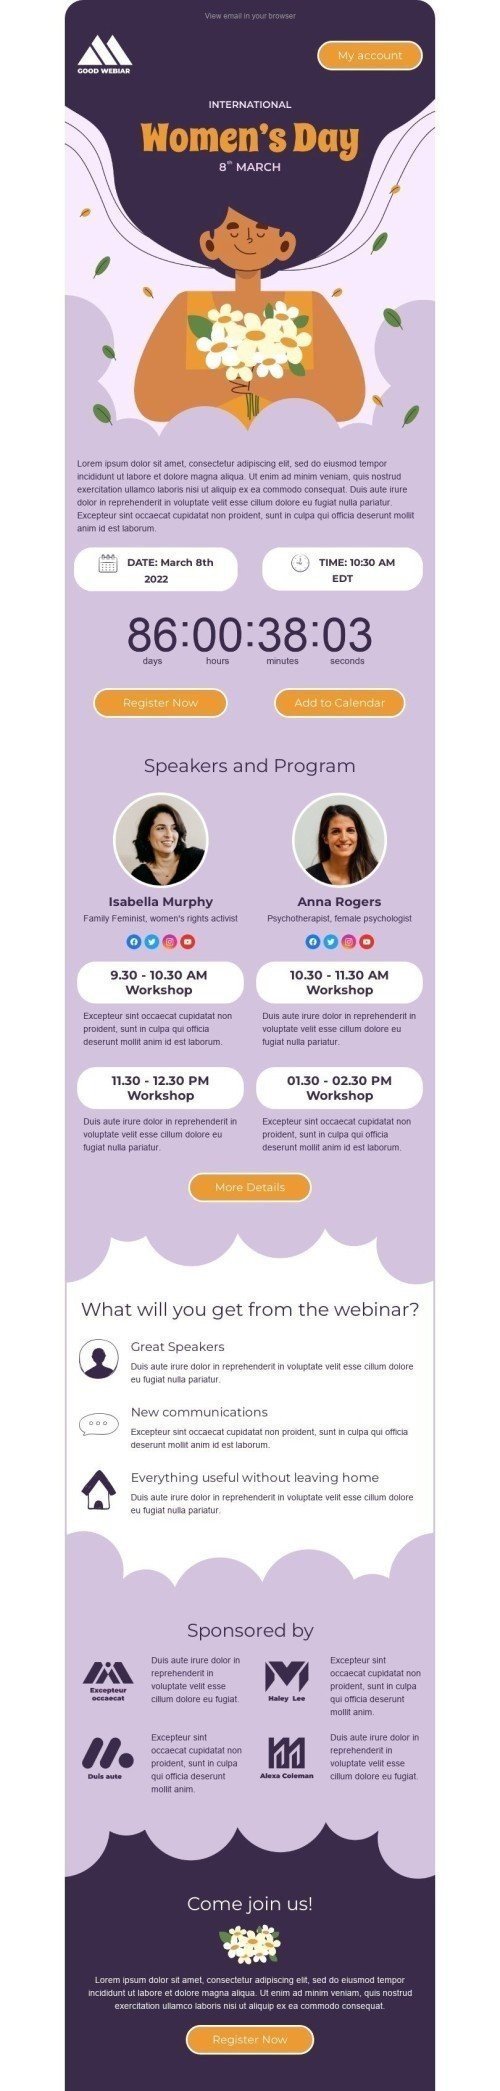 Plantilla de correo electrónico «Seminario web para mujeres» de Día de la Mujer para la industria de Seminarios en línea Vista de móvil